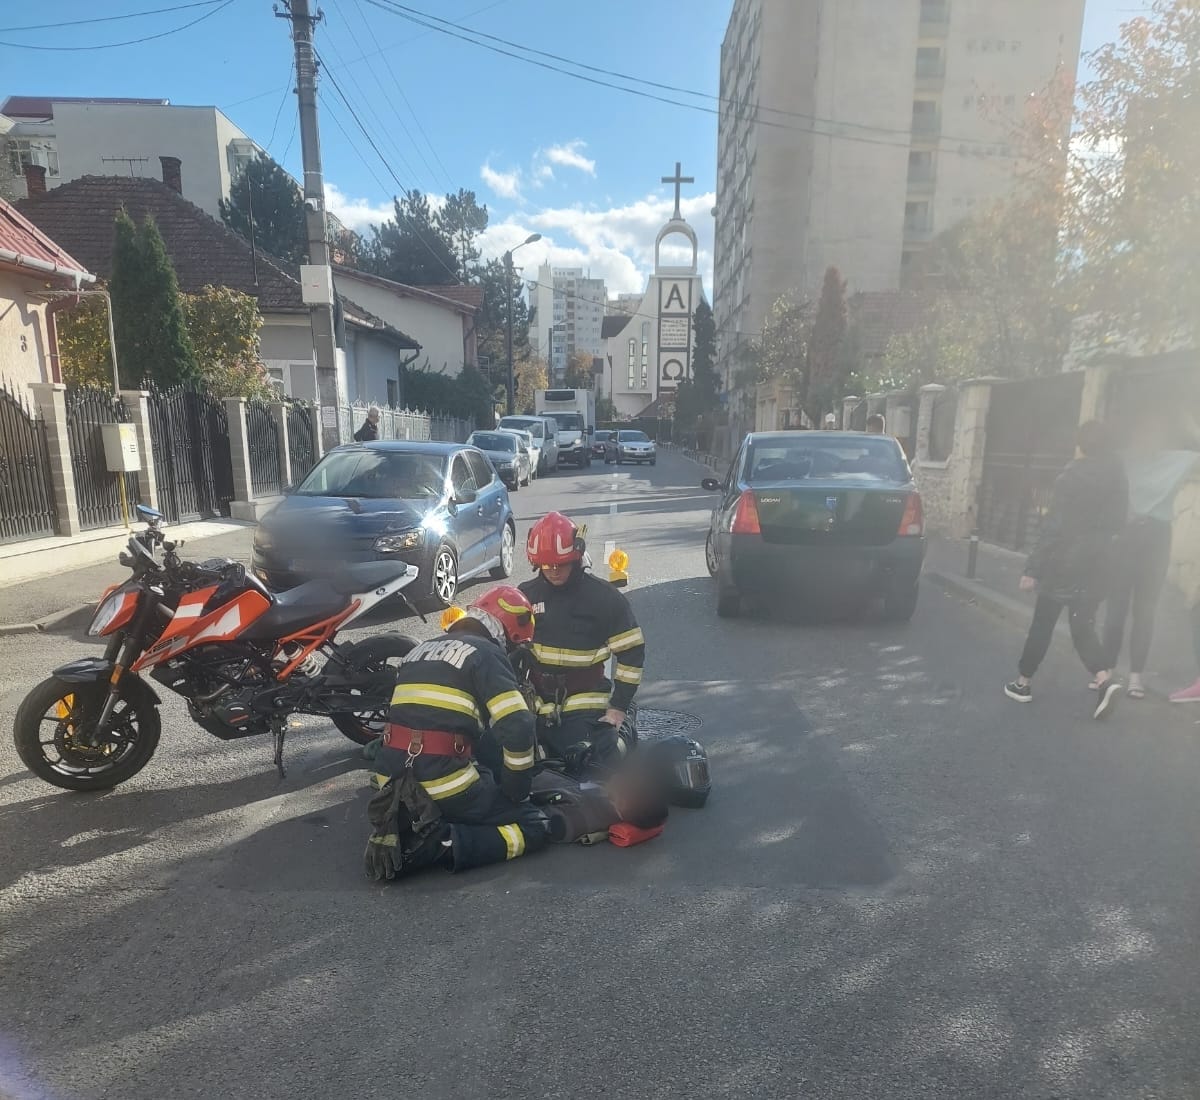 Motociclist rănit grav în urma unui accident în Cluj-Napoca! Tânărul a fost transportat de urgență la spital